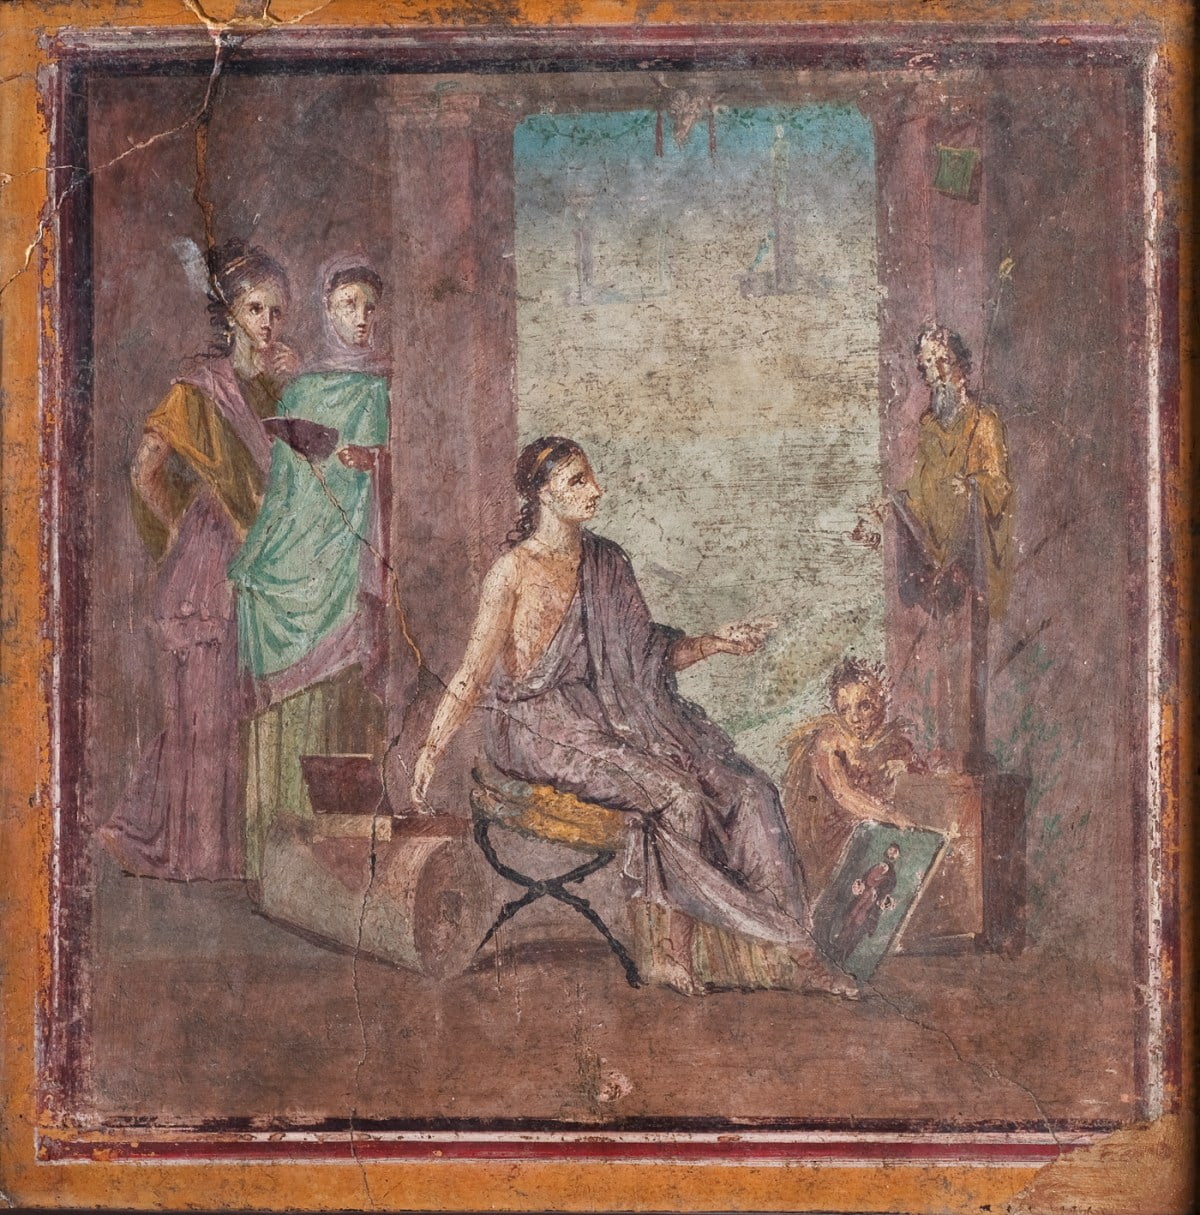 Fresce dispărute în Pompei – “readuse la viaţă”, într-o expoziţie online creată la New York University